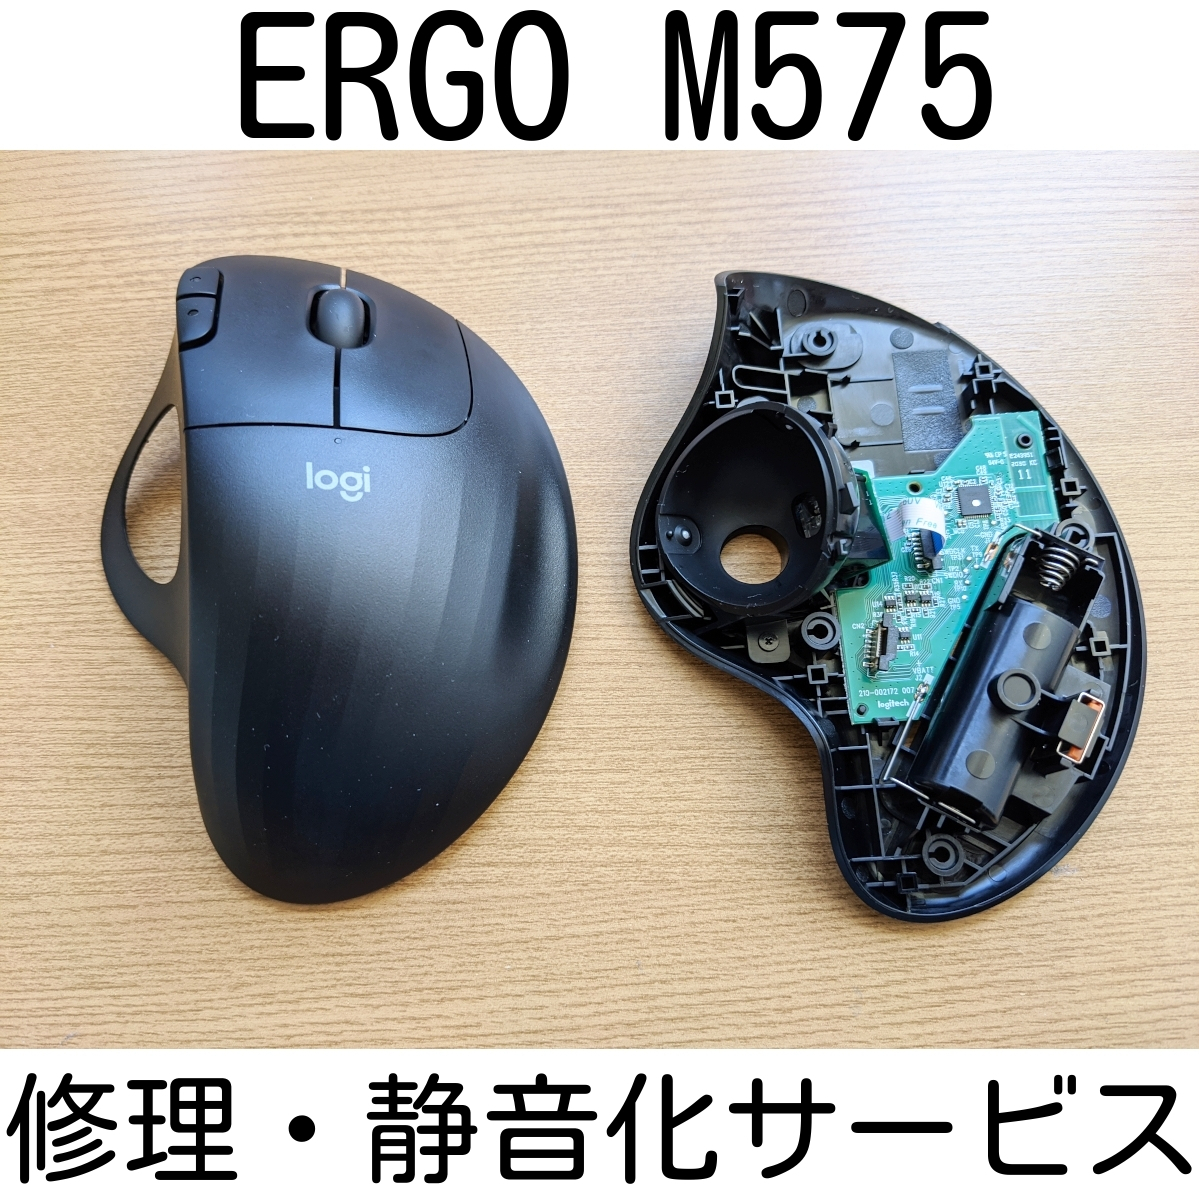 保証付きLogicool ERGO M575 修理静音化サービススイッチ交換修理代行